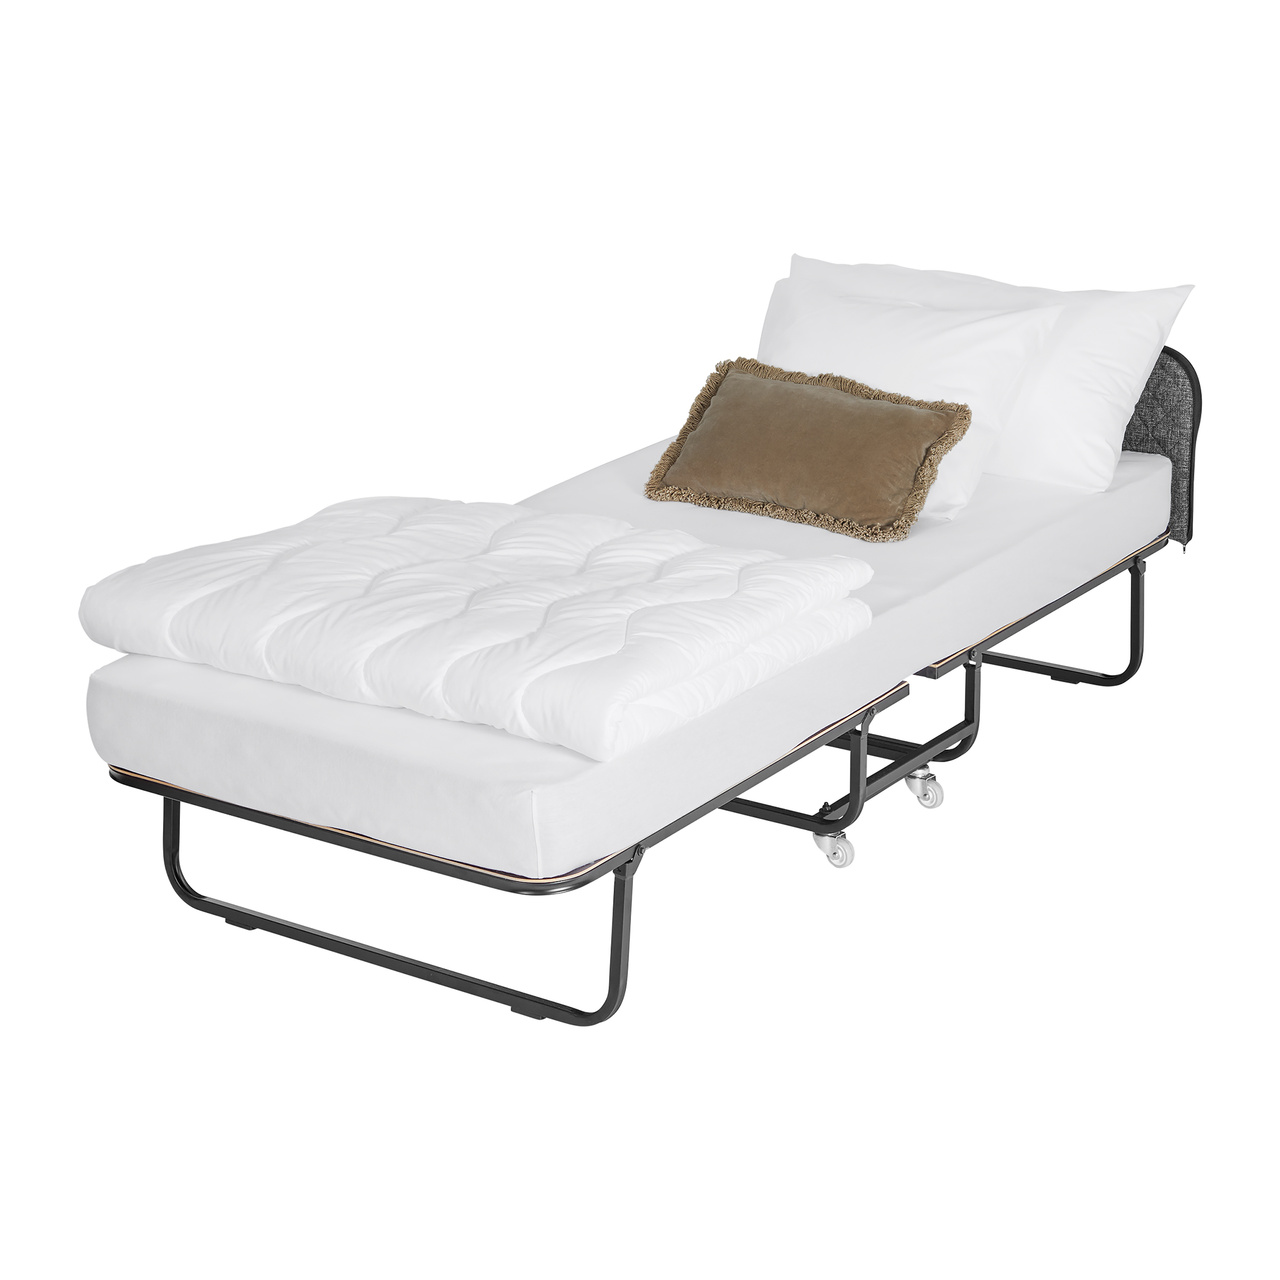 Ritz rollaway folding bed - Pocket